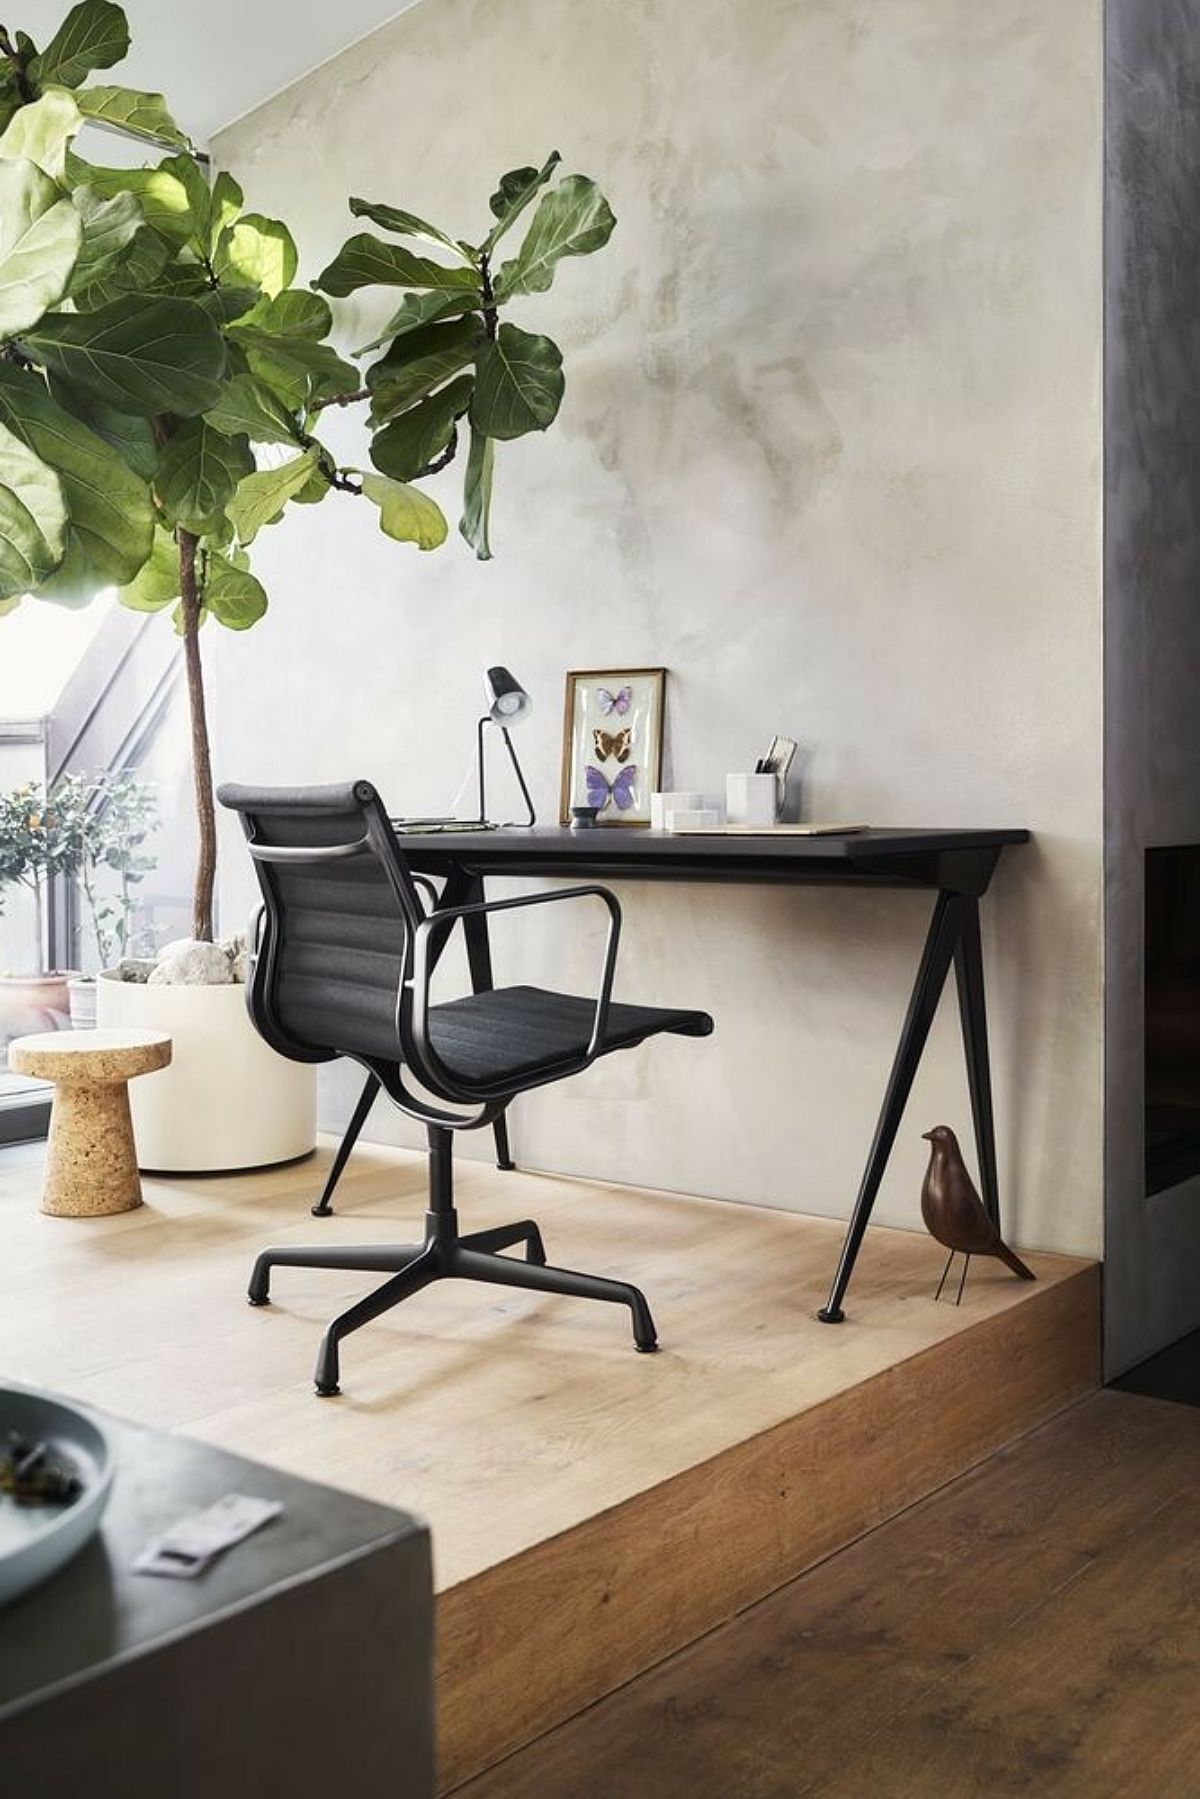 Vitra Eames Aluminium bureaustoel - deze designklassieker nu ook verkrijgbaar met zwart onderstel. 